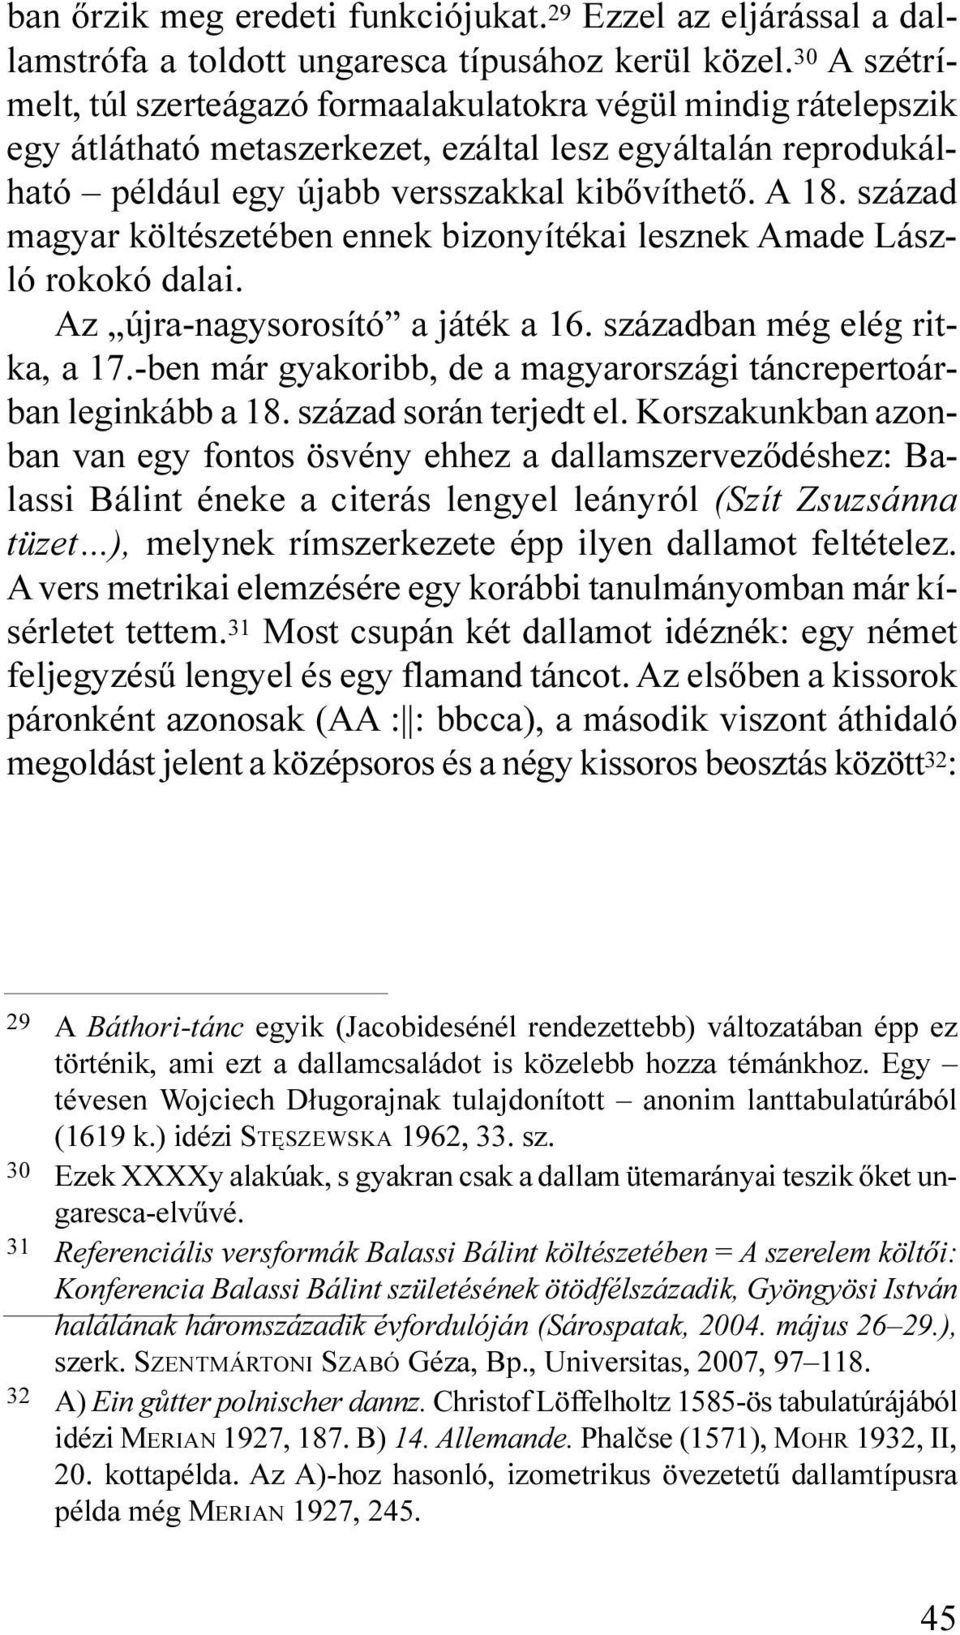 század magyar költészetében ennek bizonyítékai lesznek Amade László rokokó dalai. Az újra-nagysorosító a játék a 16. században még elég ritka, a 17.